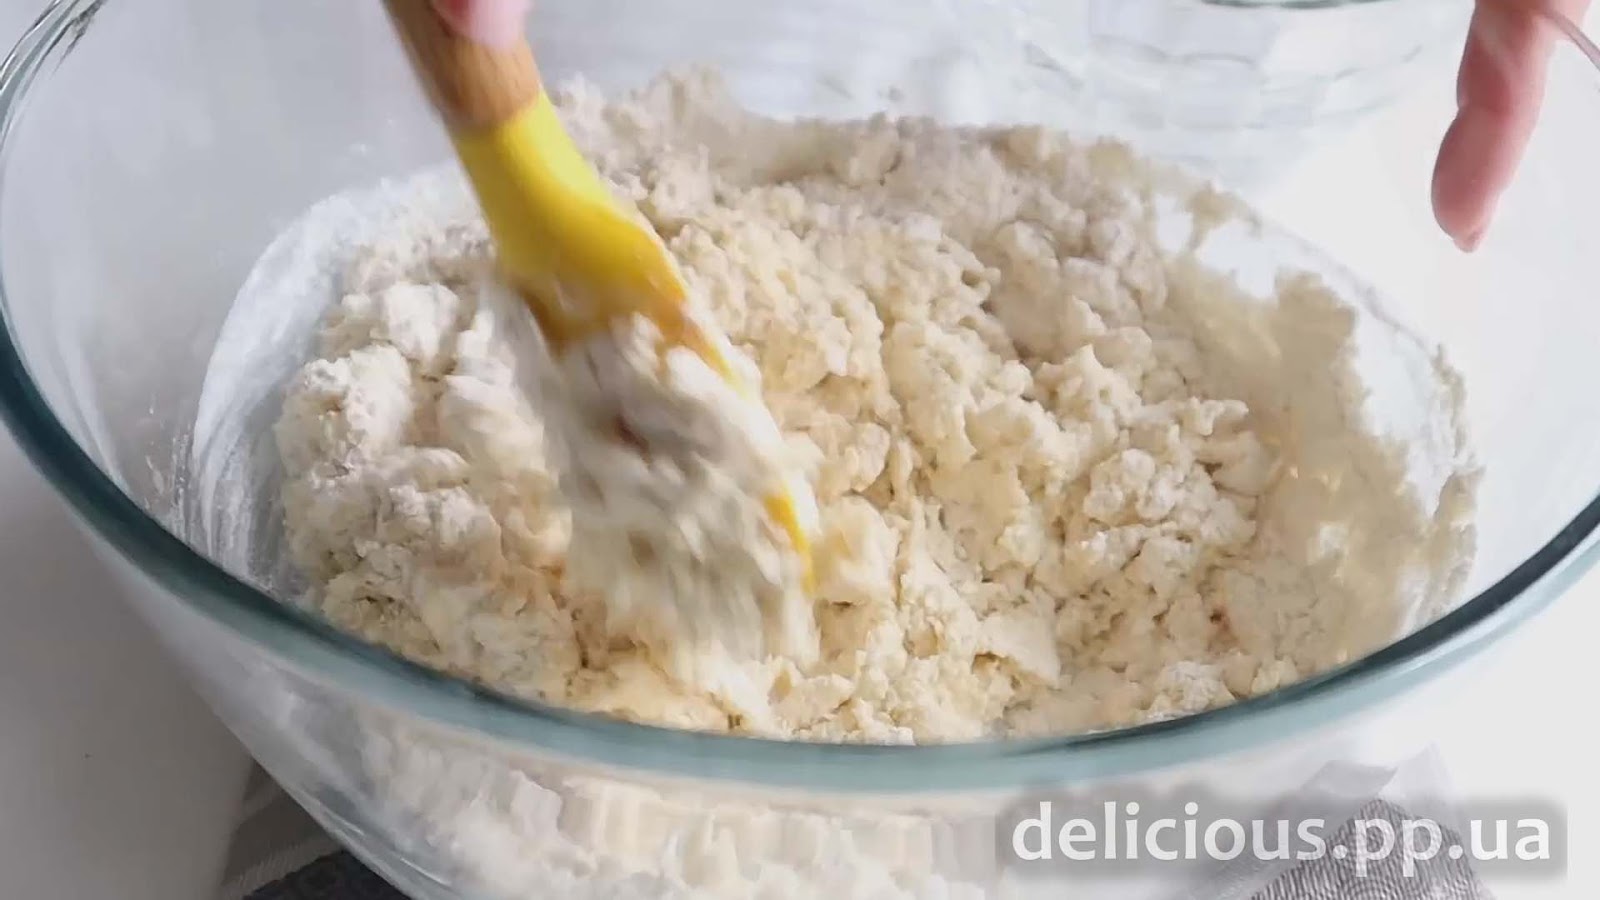 Фото приготовления рецепта: «Быстрый и вкусный Ужин с грибами - Грибной пирог (шампиньоны рецепты)» - шаг №3